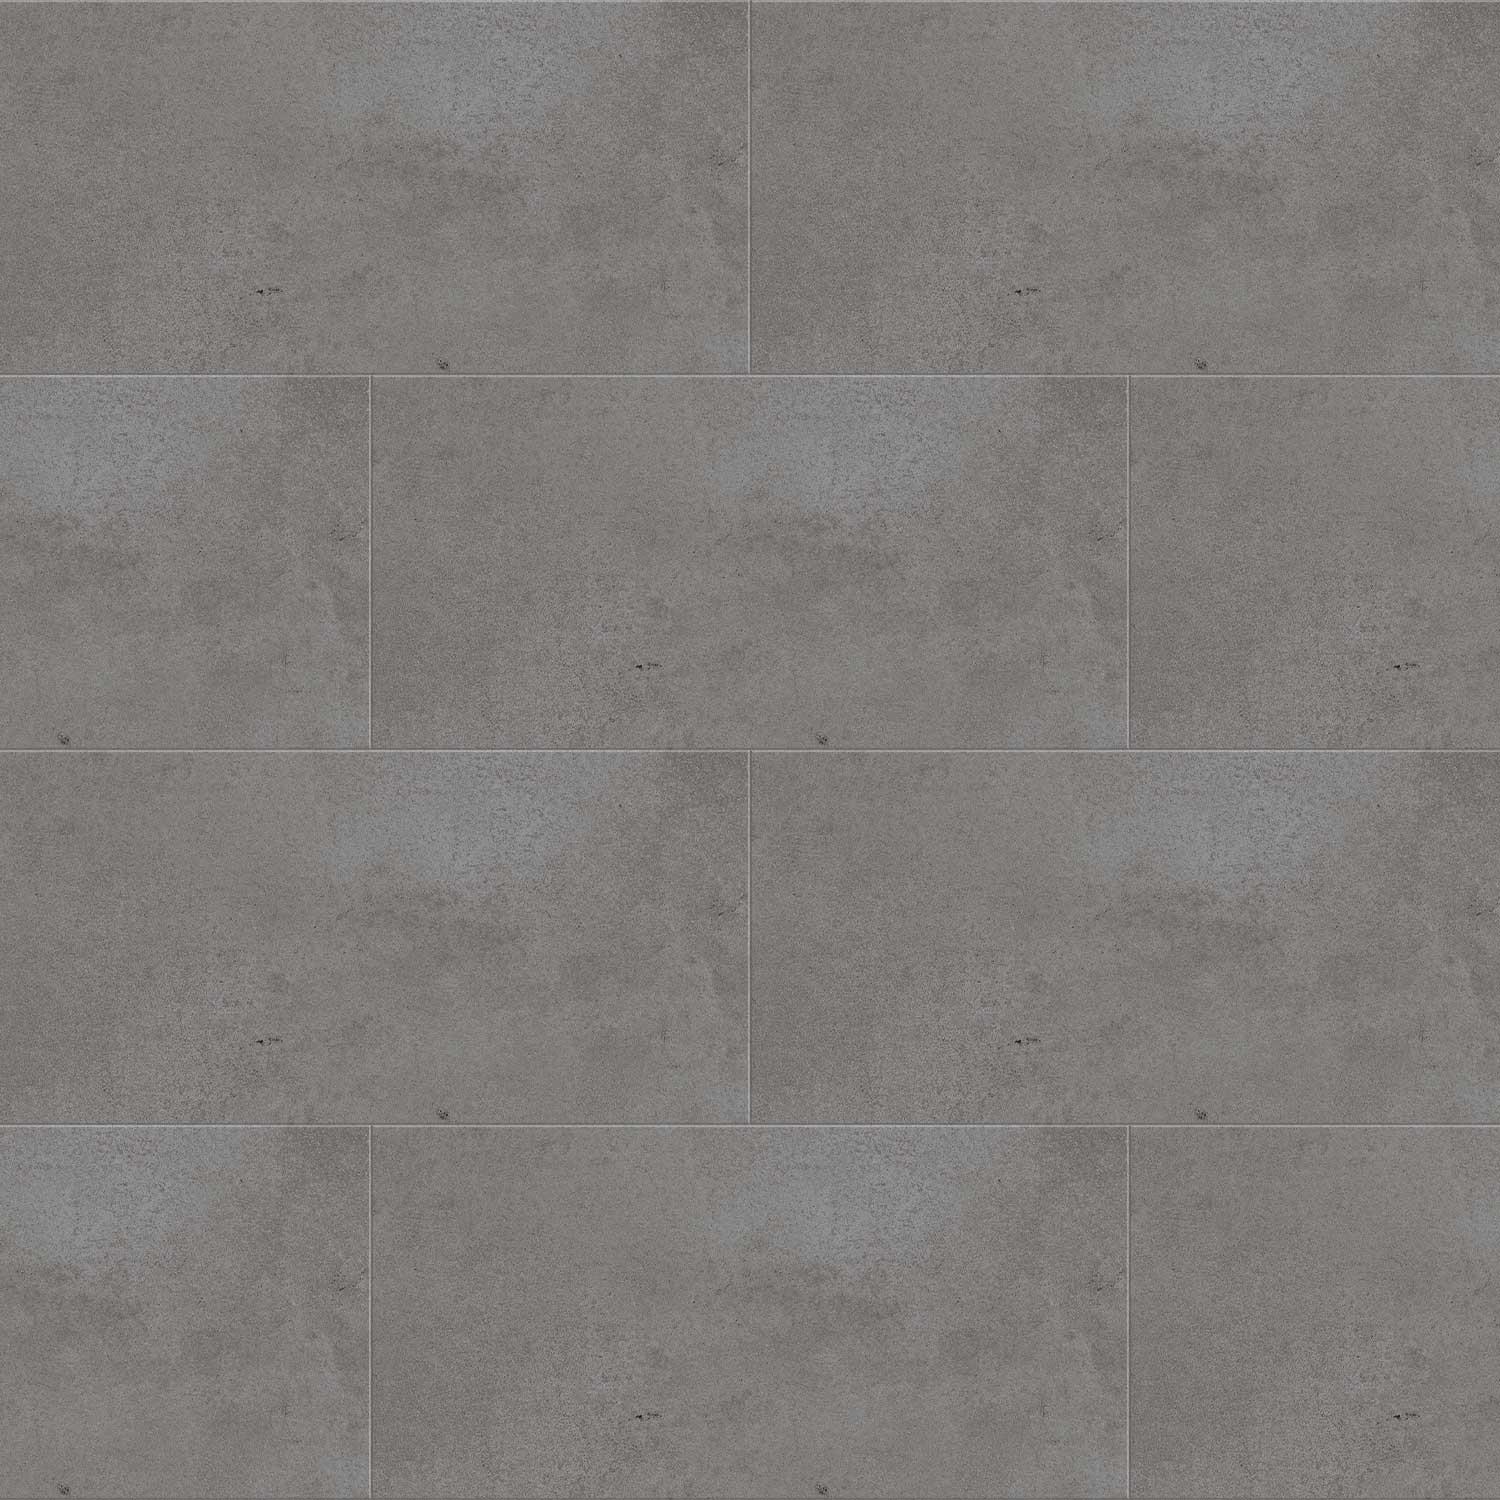 Revive Concrete Grey Porcelain Tile Walls Floor R10 Concrete 300x600mm